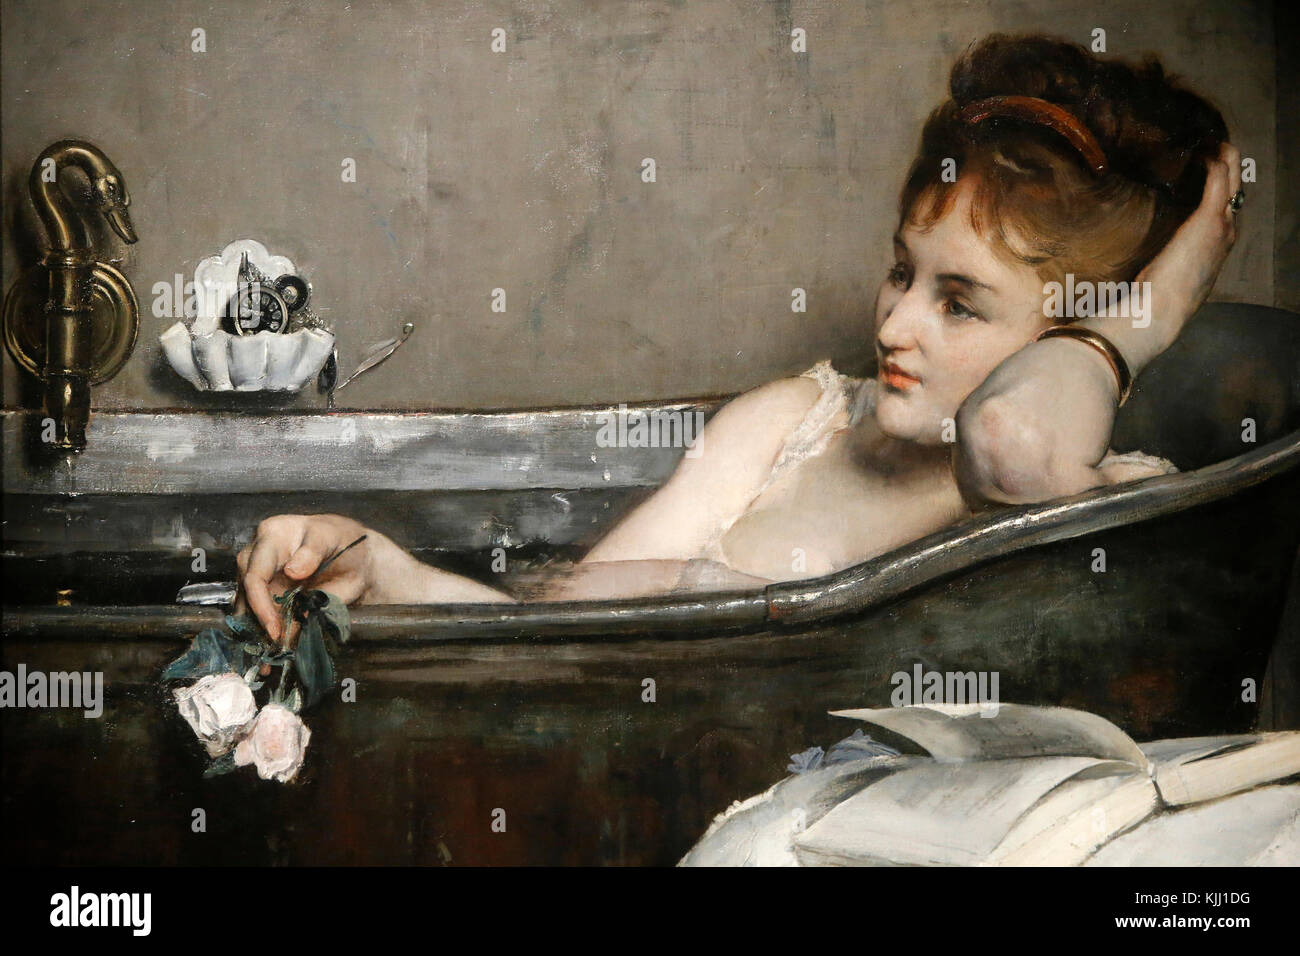 Musée d'Orsay. Alfred Stevens. La baignoire aussi connu sous le nom de femme au bain. Huile sur toile, c. 1867. La France. Banque D'Images